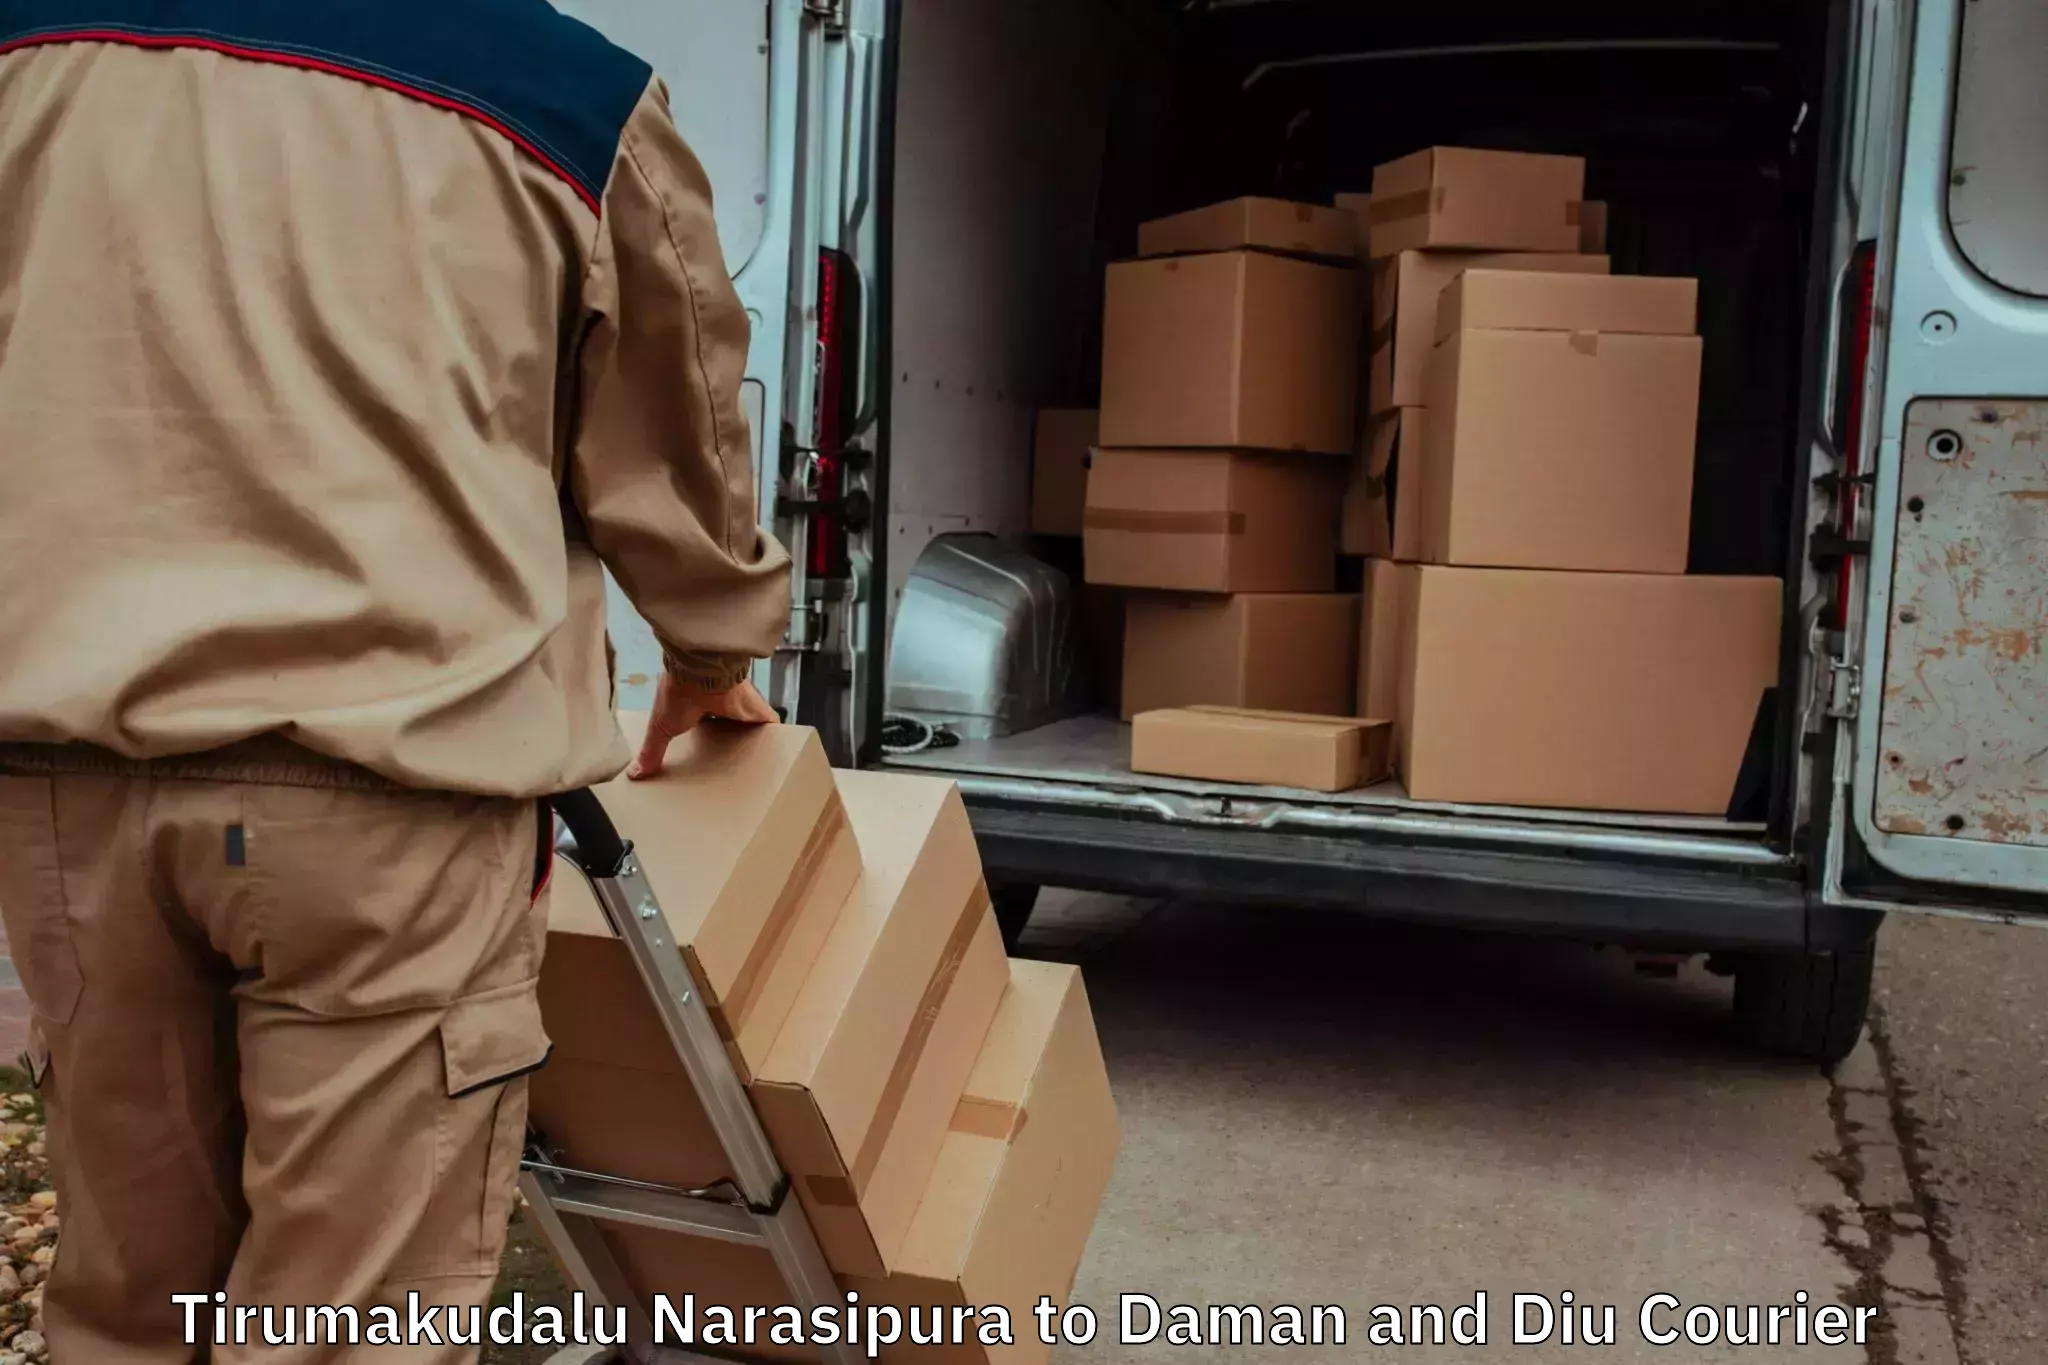 Skilled furniture transporters Tirumakudalu Narasipura to Daman